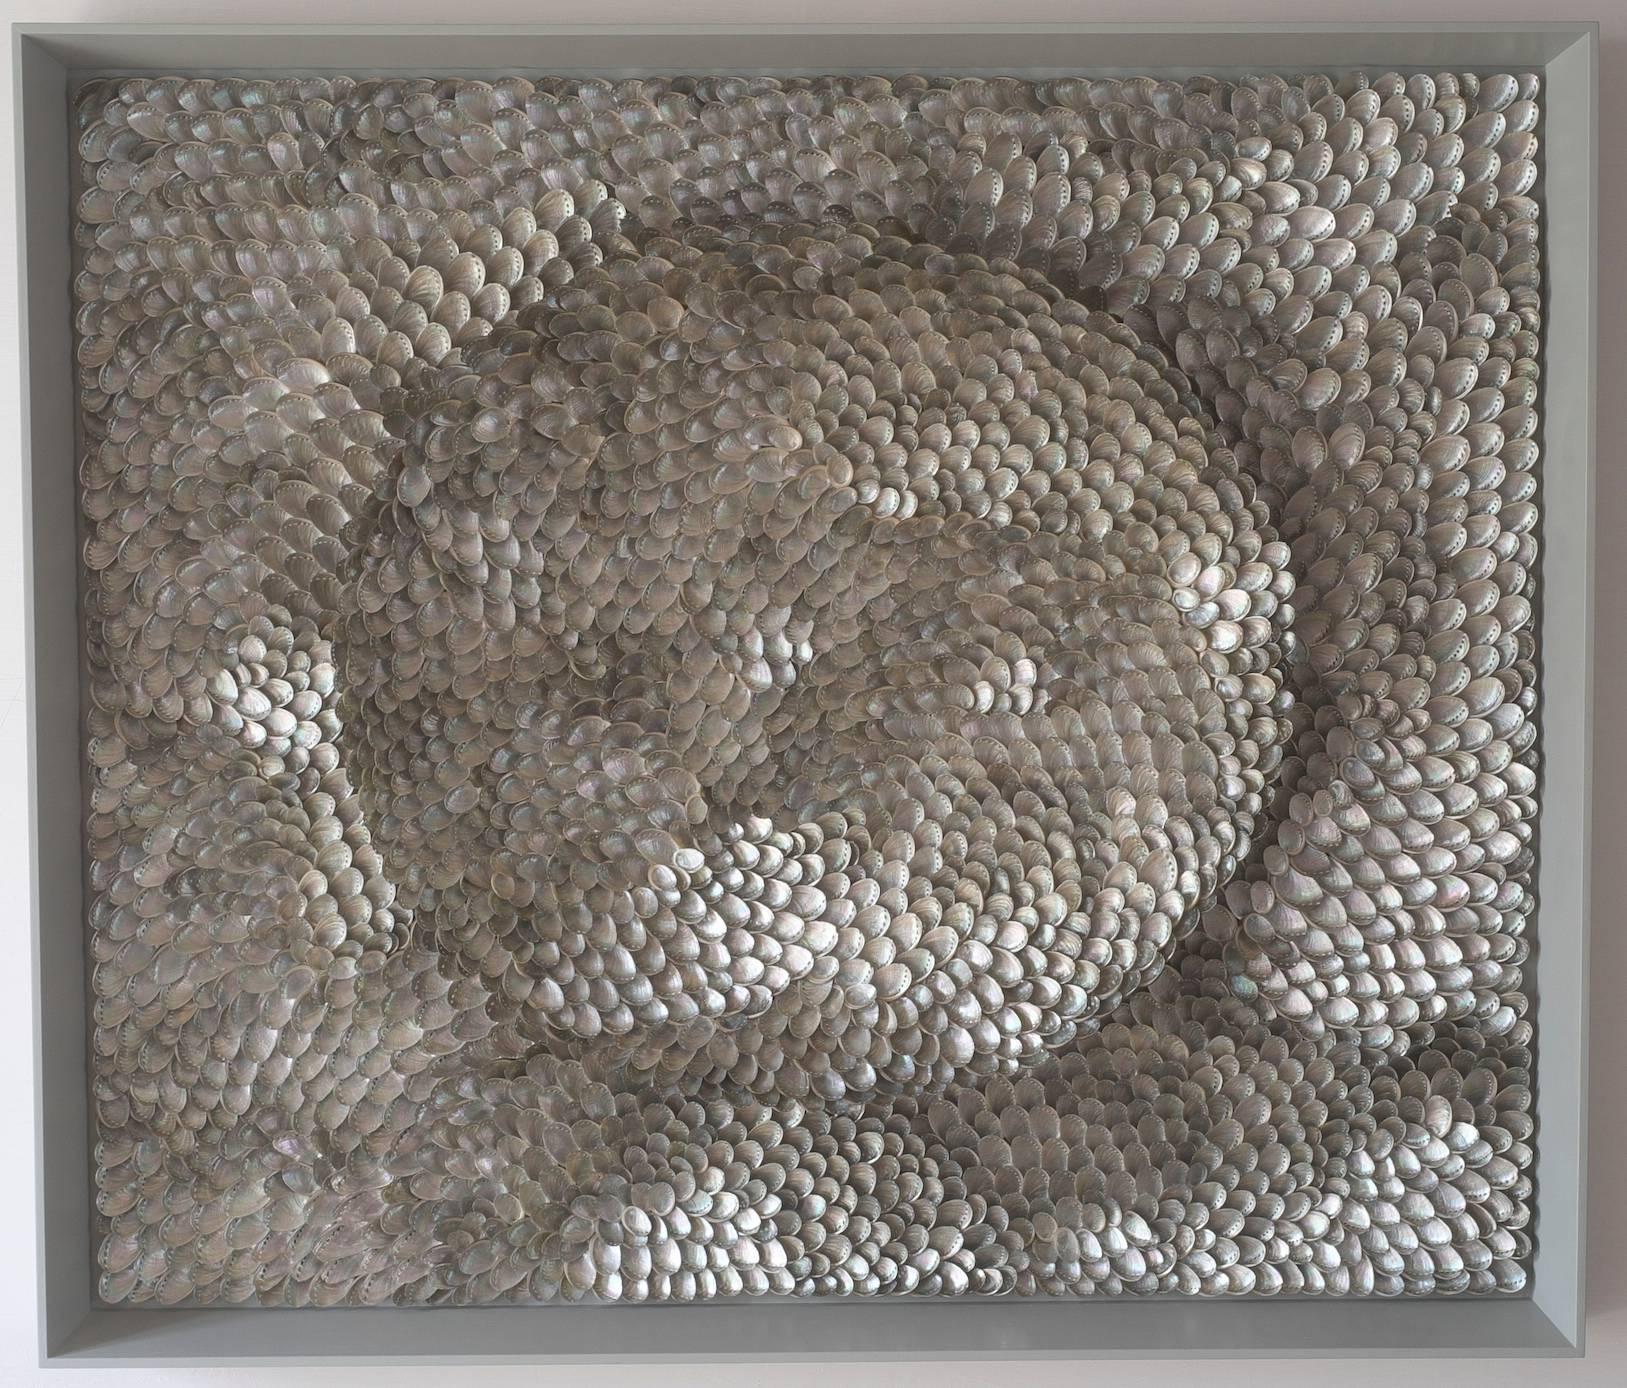 Blott Kerr-Wilson Abstract Sculpture - 'Lifted' - powerful wall mounted shell sculpture